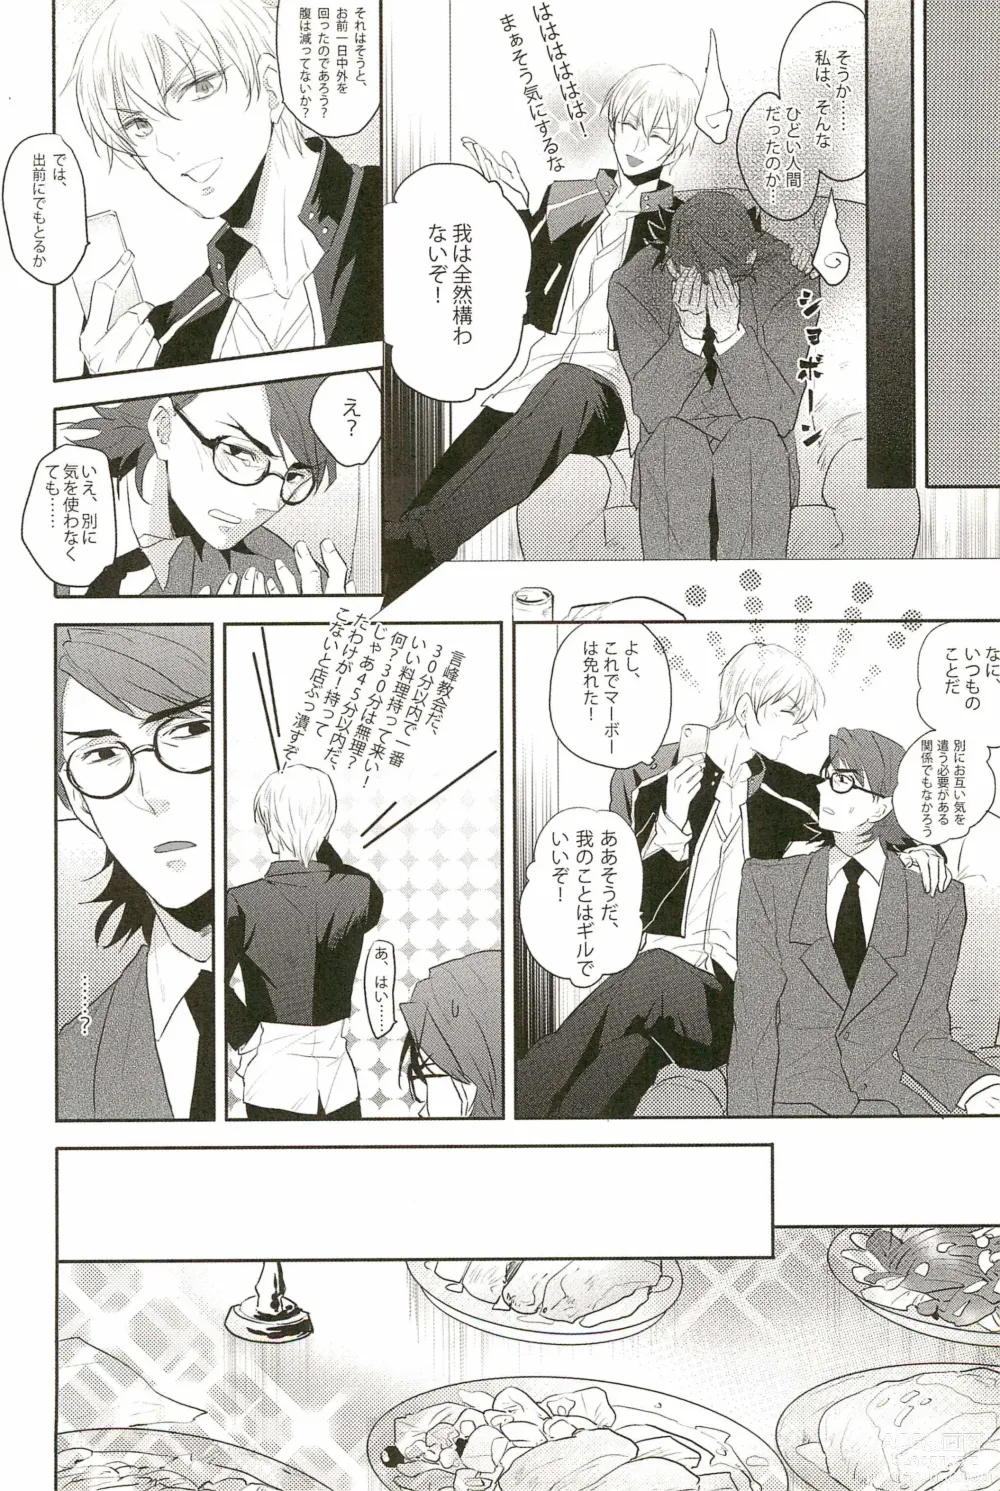 Page 8 of doujinshi Warera Dosei Shite Iru.